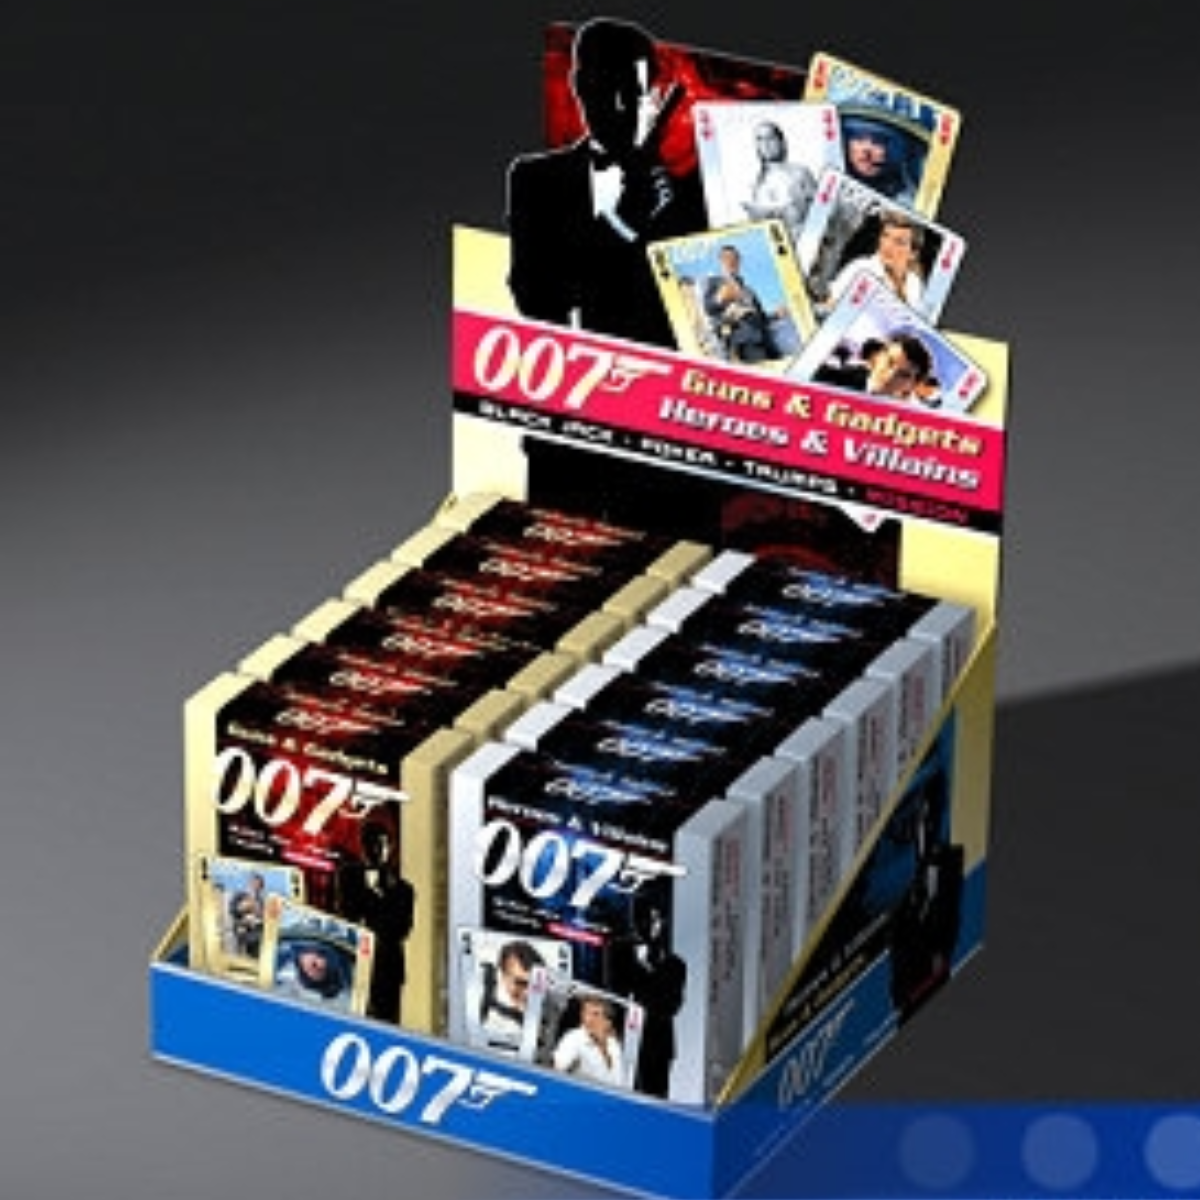 James Bond 007 Guns & Gadgets Poker Cards-Cartamundi-Ace Cards & Collectibles